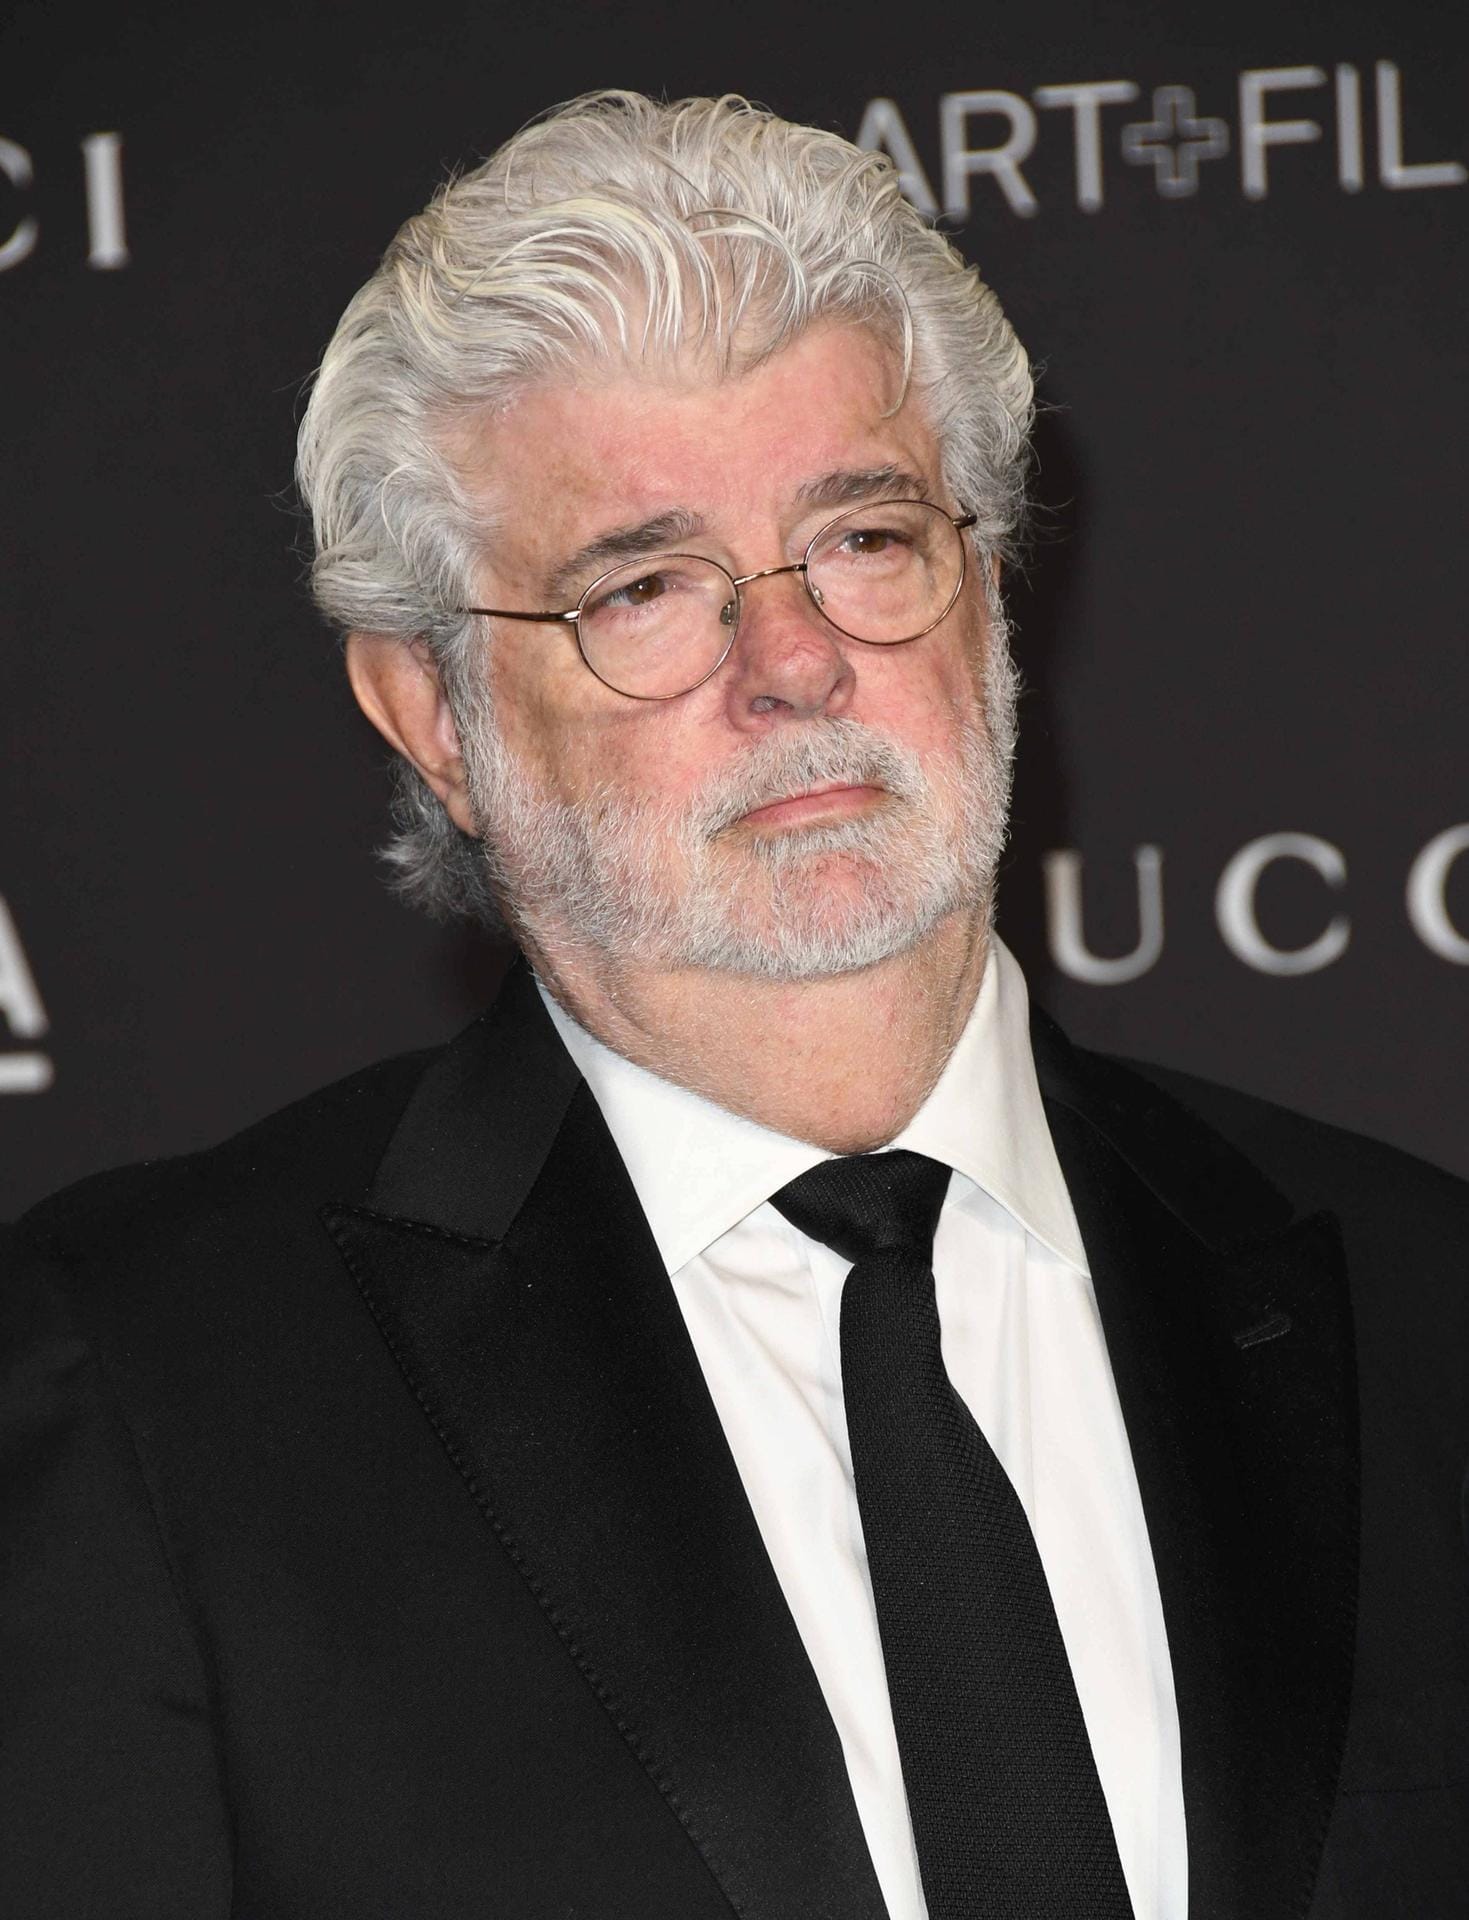 George Lucas: Der "Star Wars"-Schöpfer wollte seinen Militärdienst im Vietnamkrieg antreten, als sich herausstellte, dass er an Diabetes leidet. Er wurde als untauglich eingestuft. Danach feierte er als Produzent, Drehbuchautor und Regisseur Erfolge.